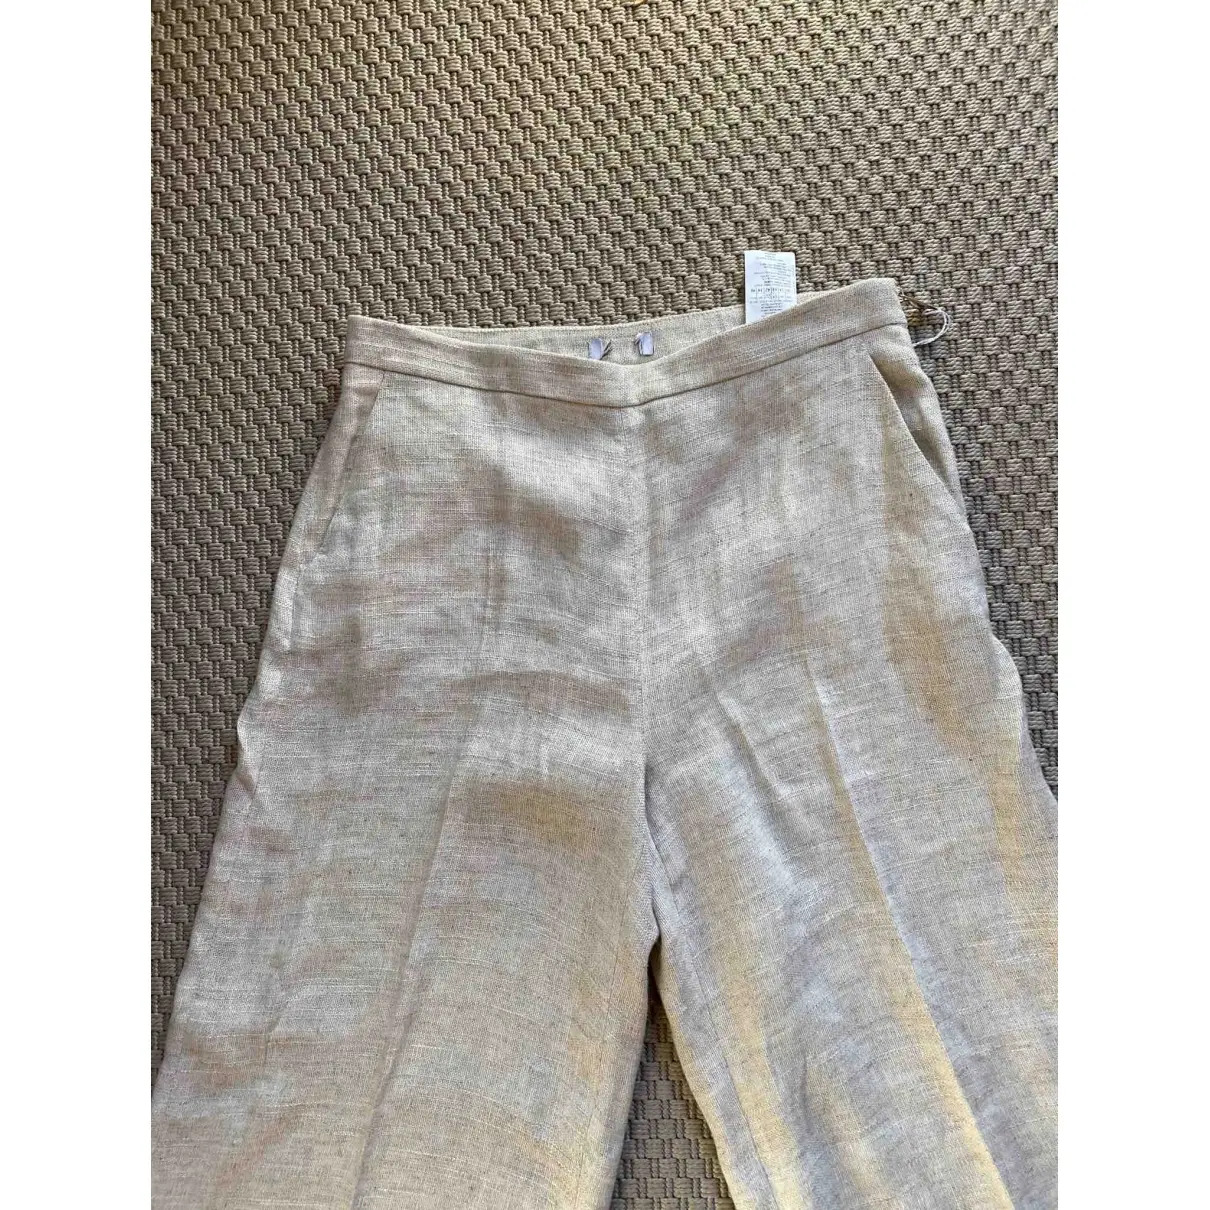 Linen large pants Max & Co